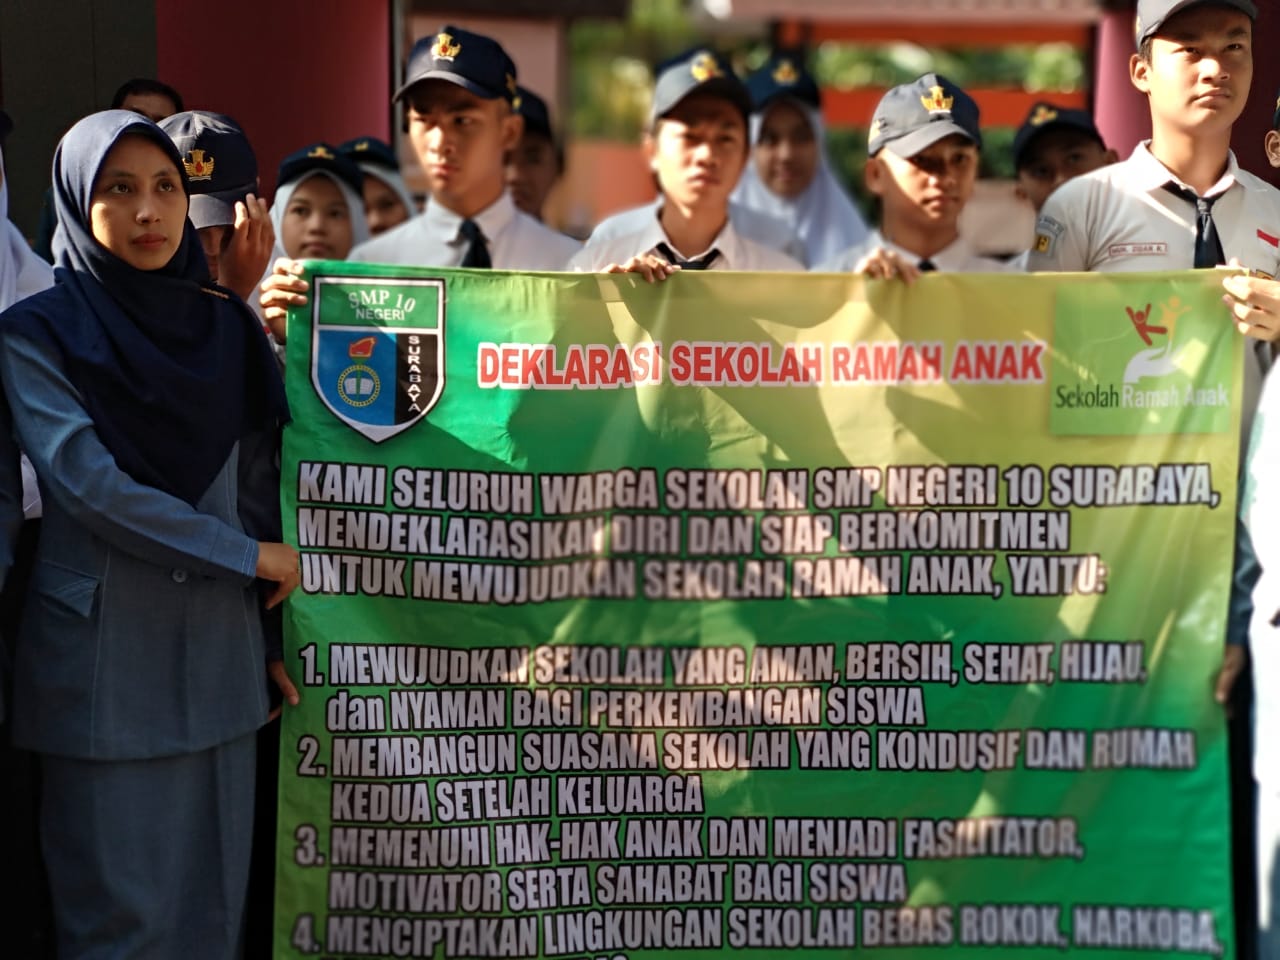 SMP-Negeri-10-Surabaya-saat-Deklarasi-Sekolah-Ramah-Anak-a.jpg